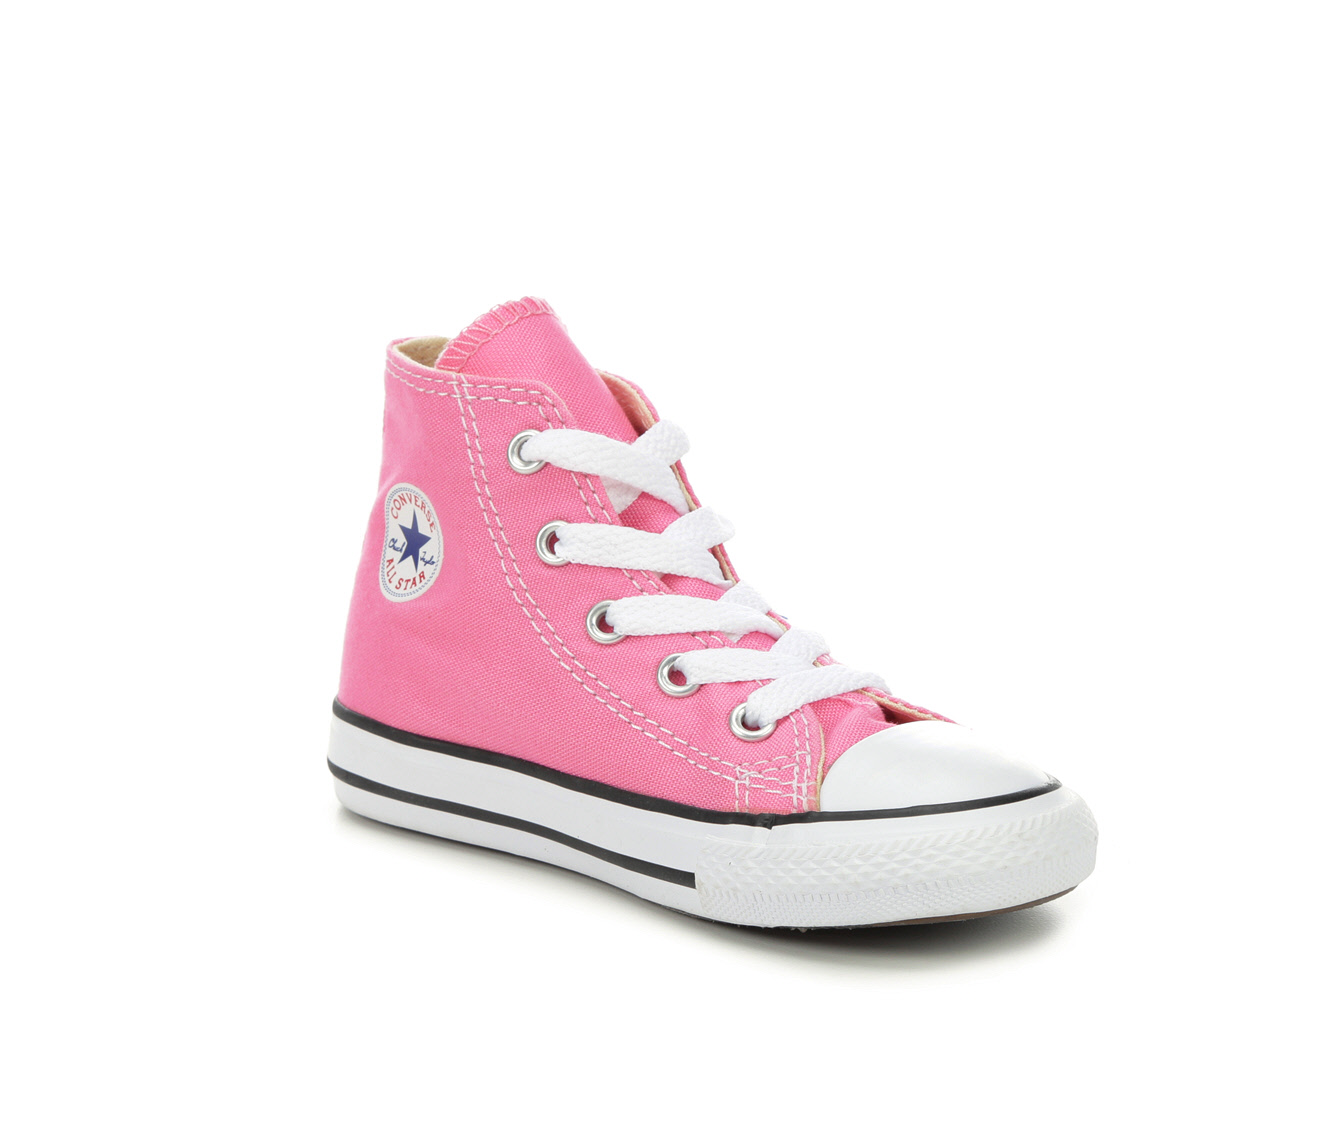 pink converse toddler